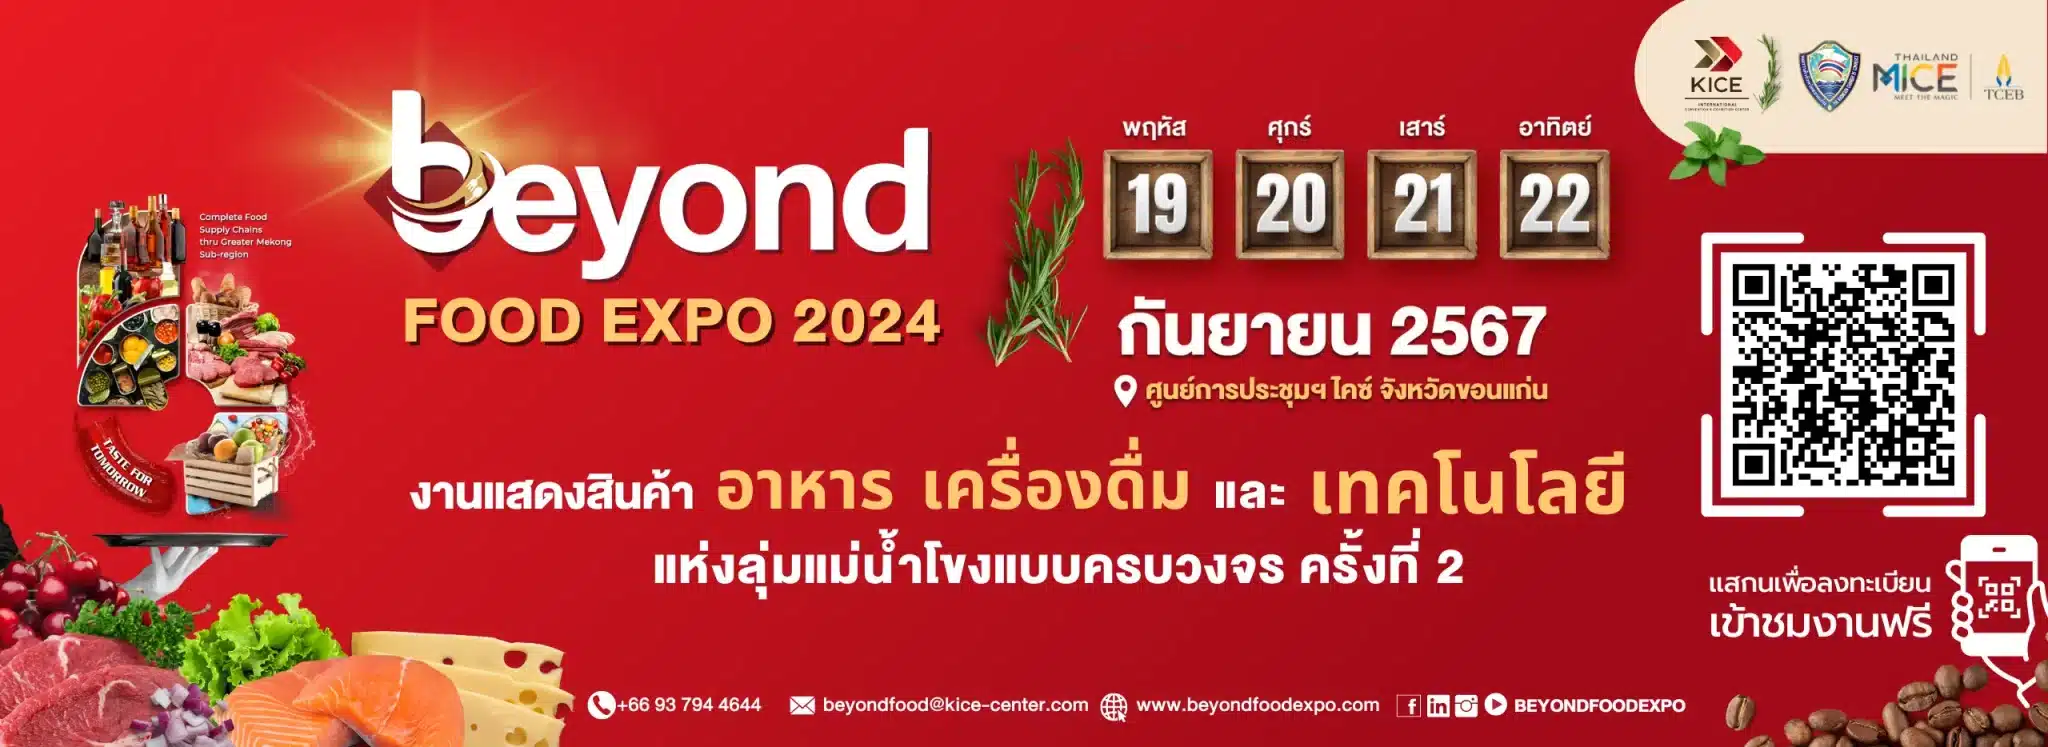 beyond food expo image-01